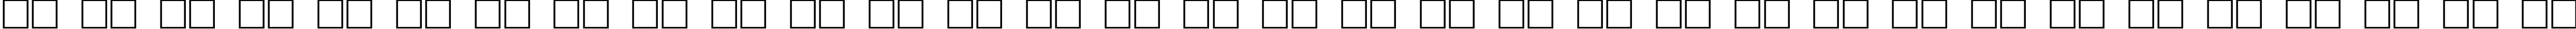 Пример написания русского алфавита шрифтом Kahless Pro